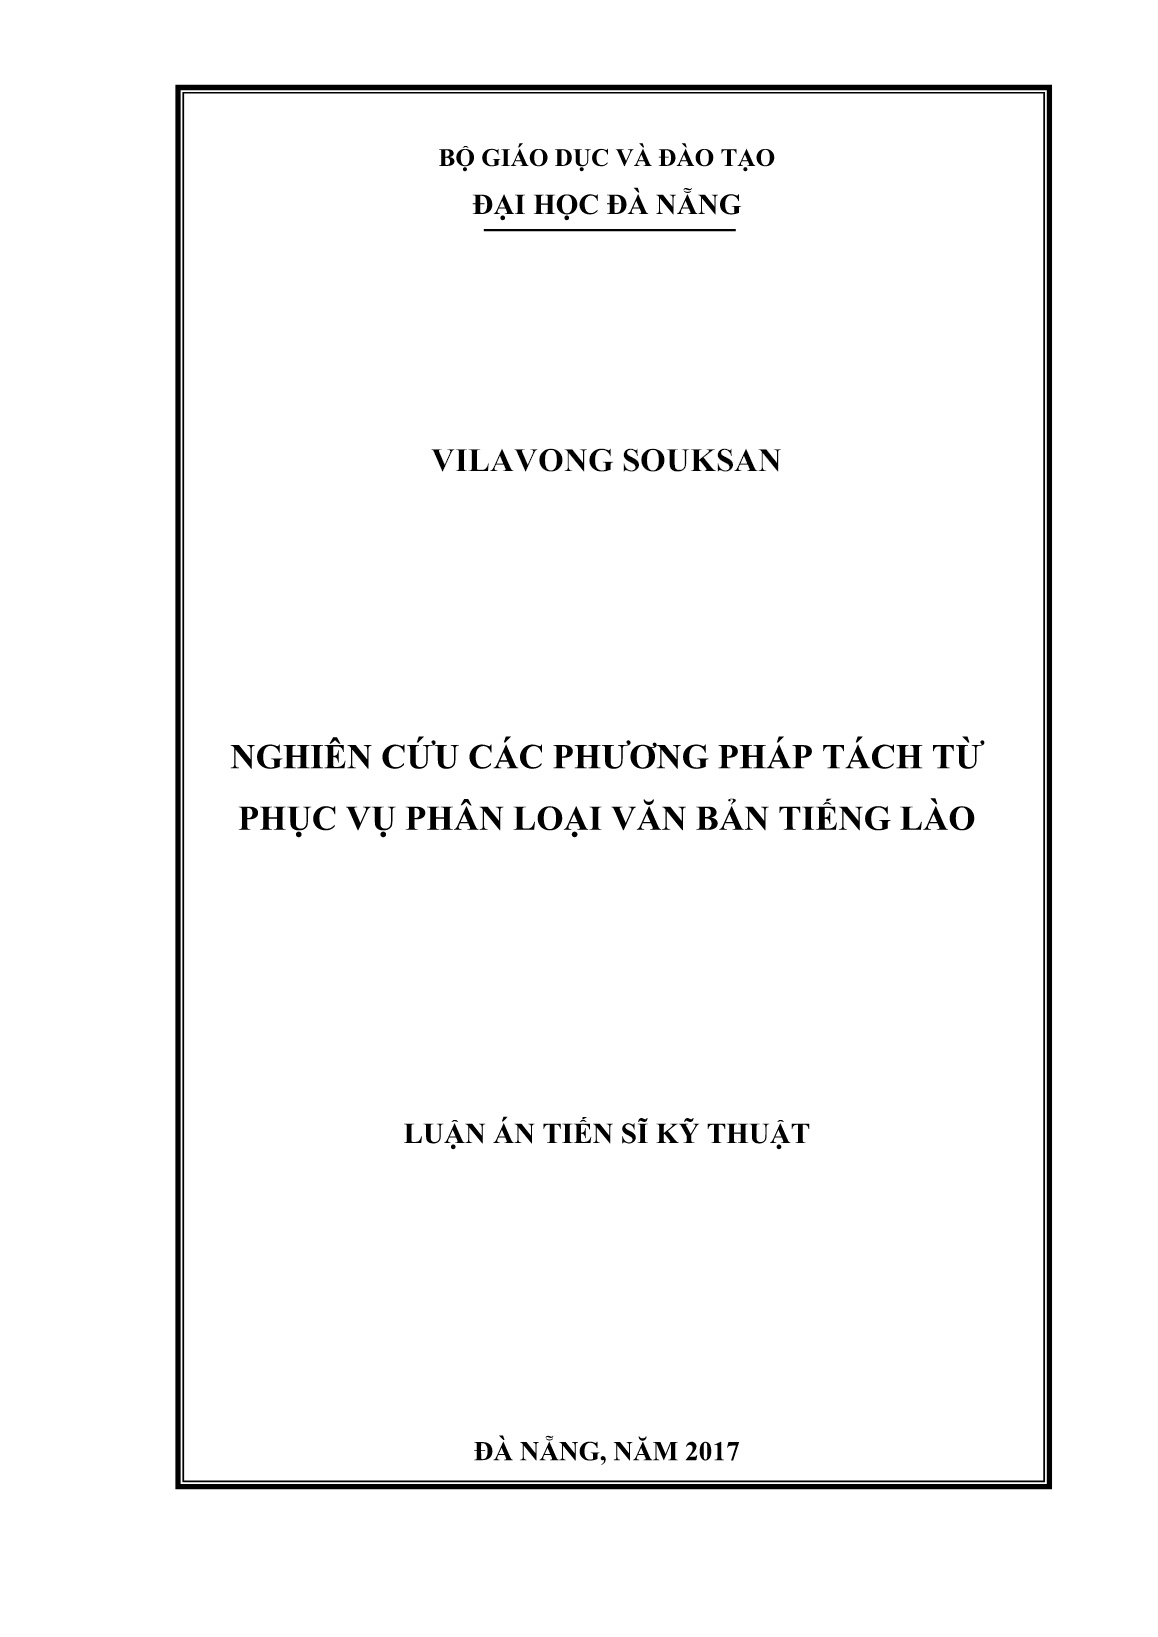 Luận án Nghiên cứu các phương pháp tách từ phục vụ phân loại văn bản tiếng Lào trang 1